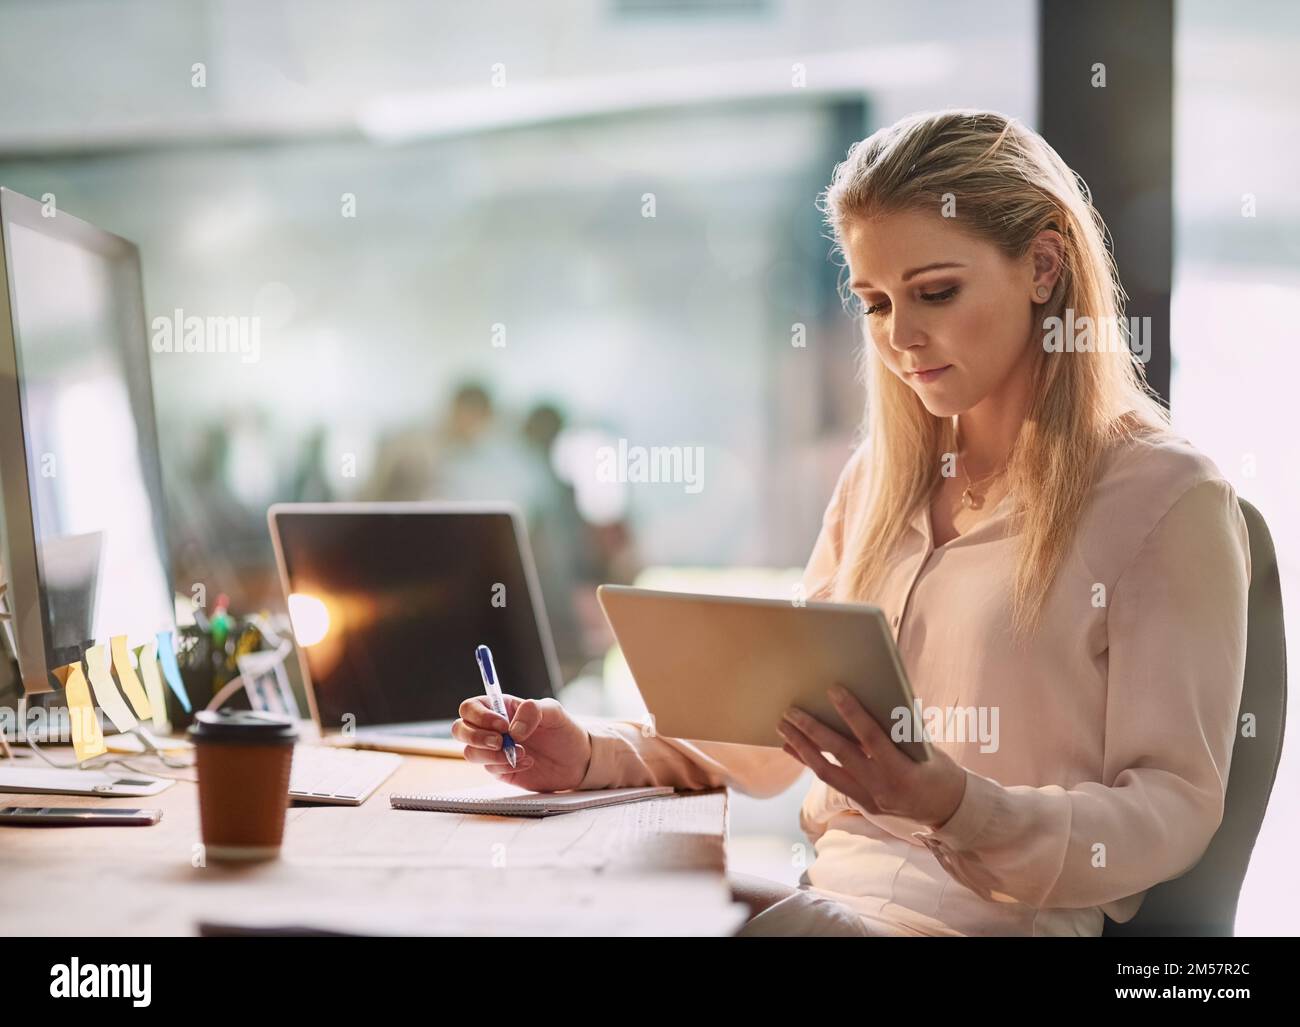 Sie nutzt Technologie bei ihrer täglichen Arbeit. Eine lächelnde junge Geschäftsfrau, die in einem Büro an einem digitalen Tablet arbeitet. Stockfoto